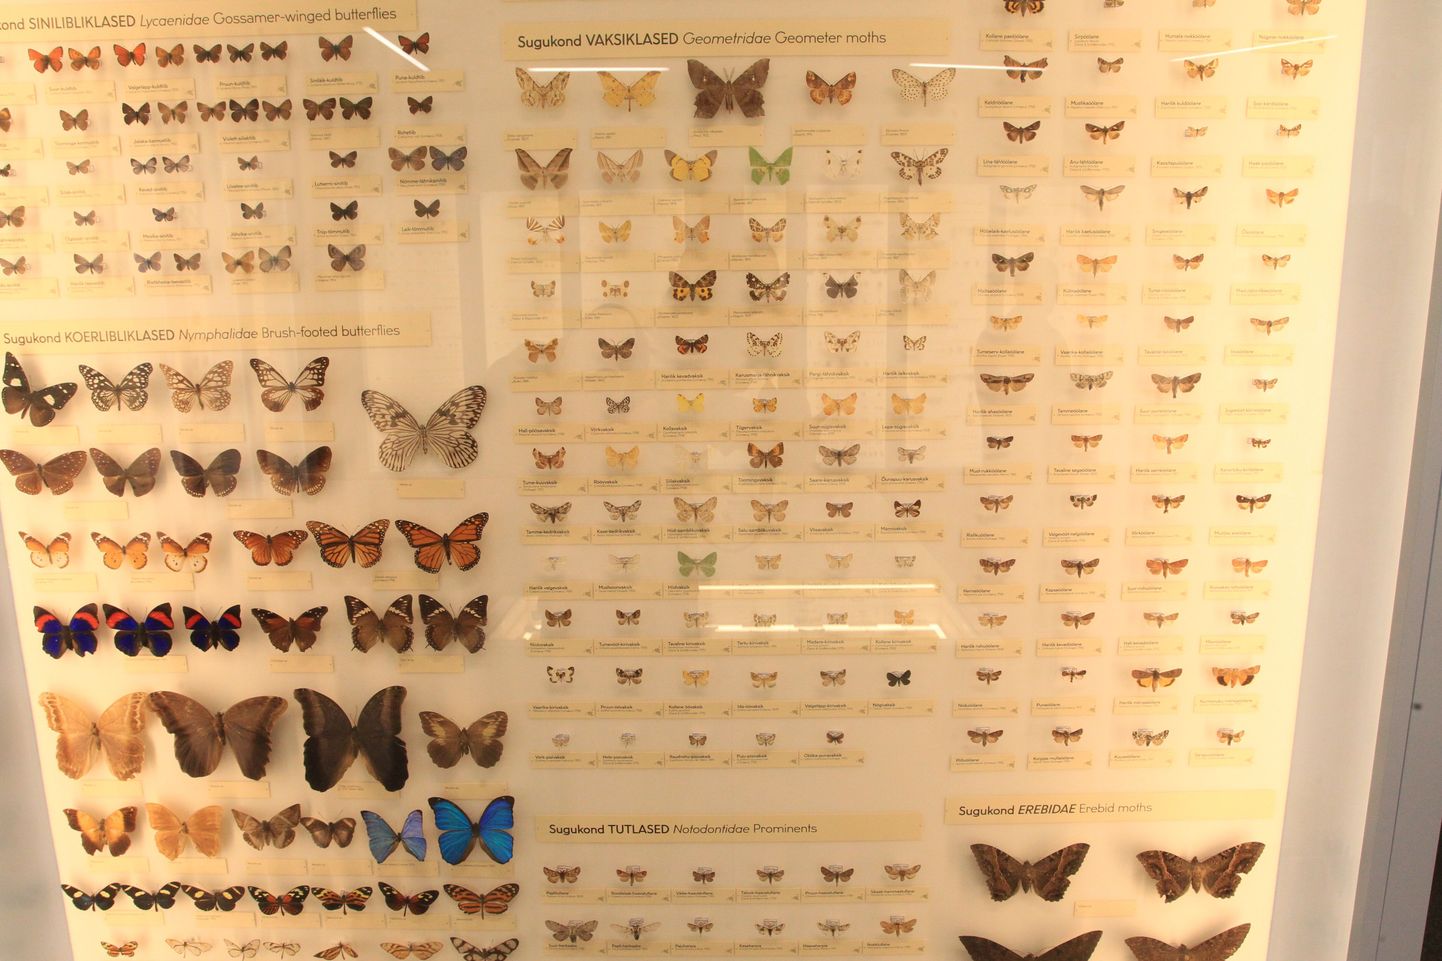 Osa ülikooli loodusmuuseumi liblikakogust. Pilt on illustratiivne.